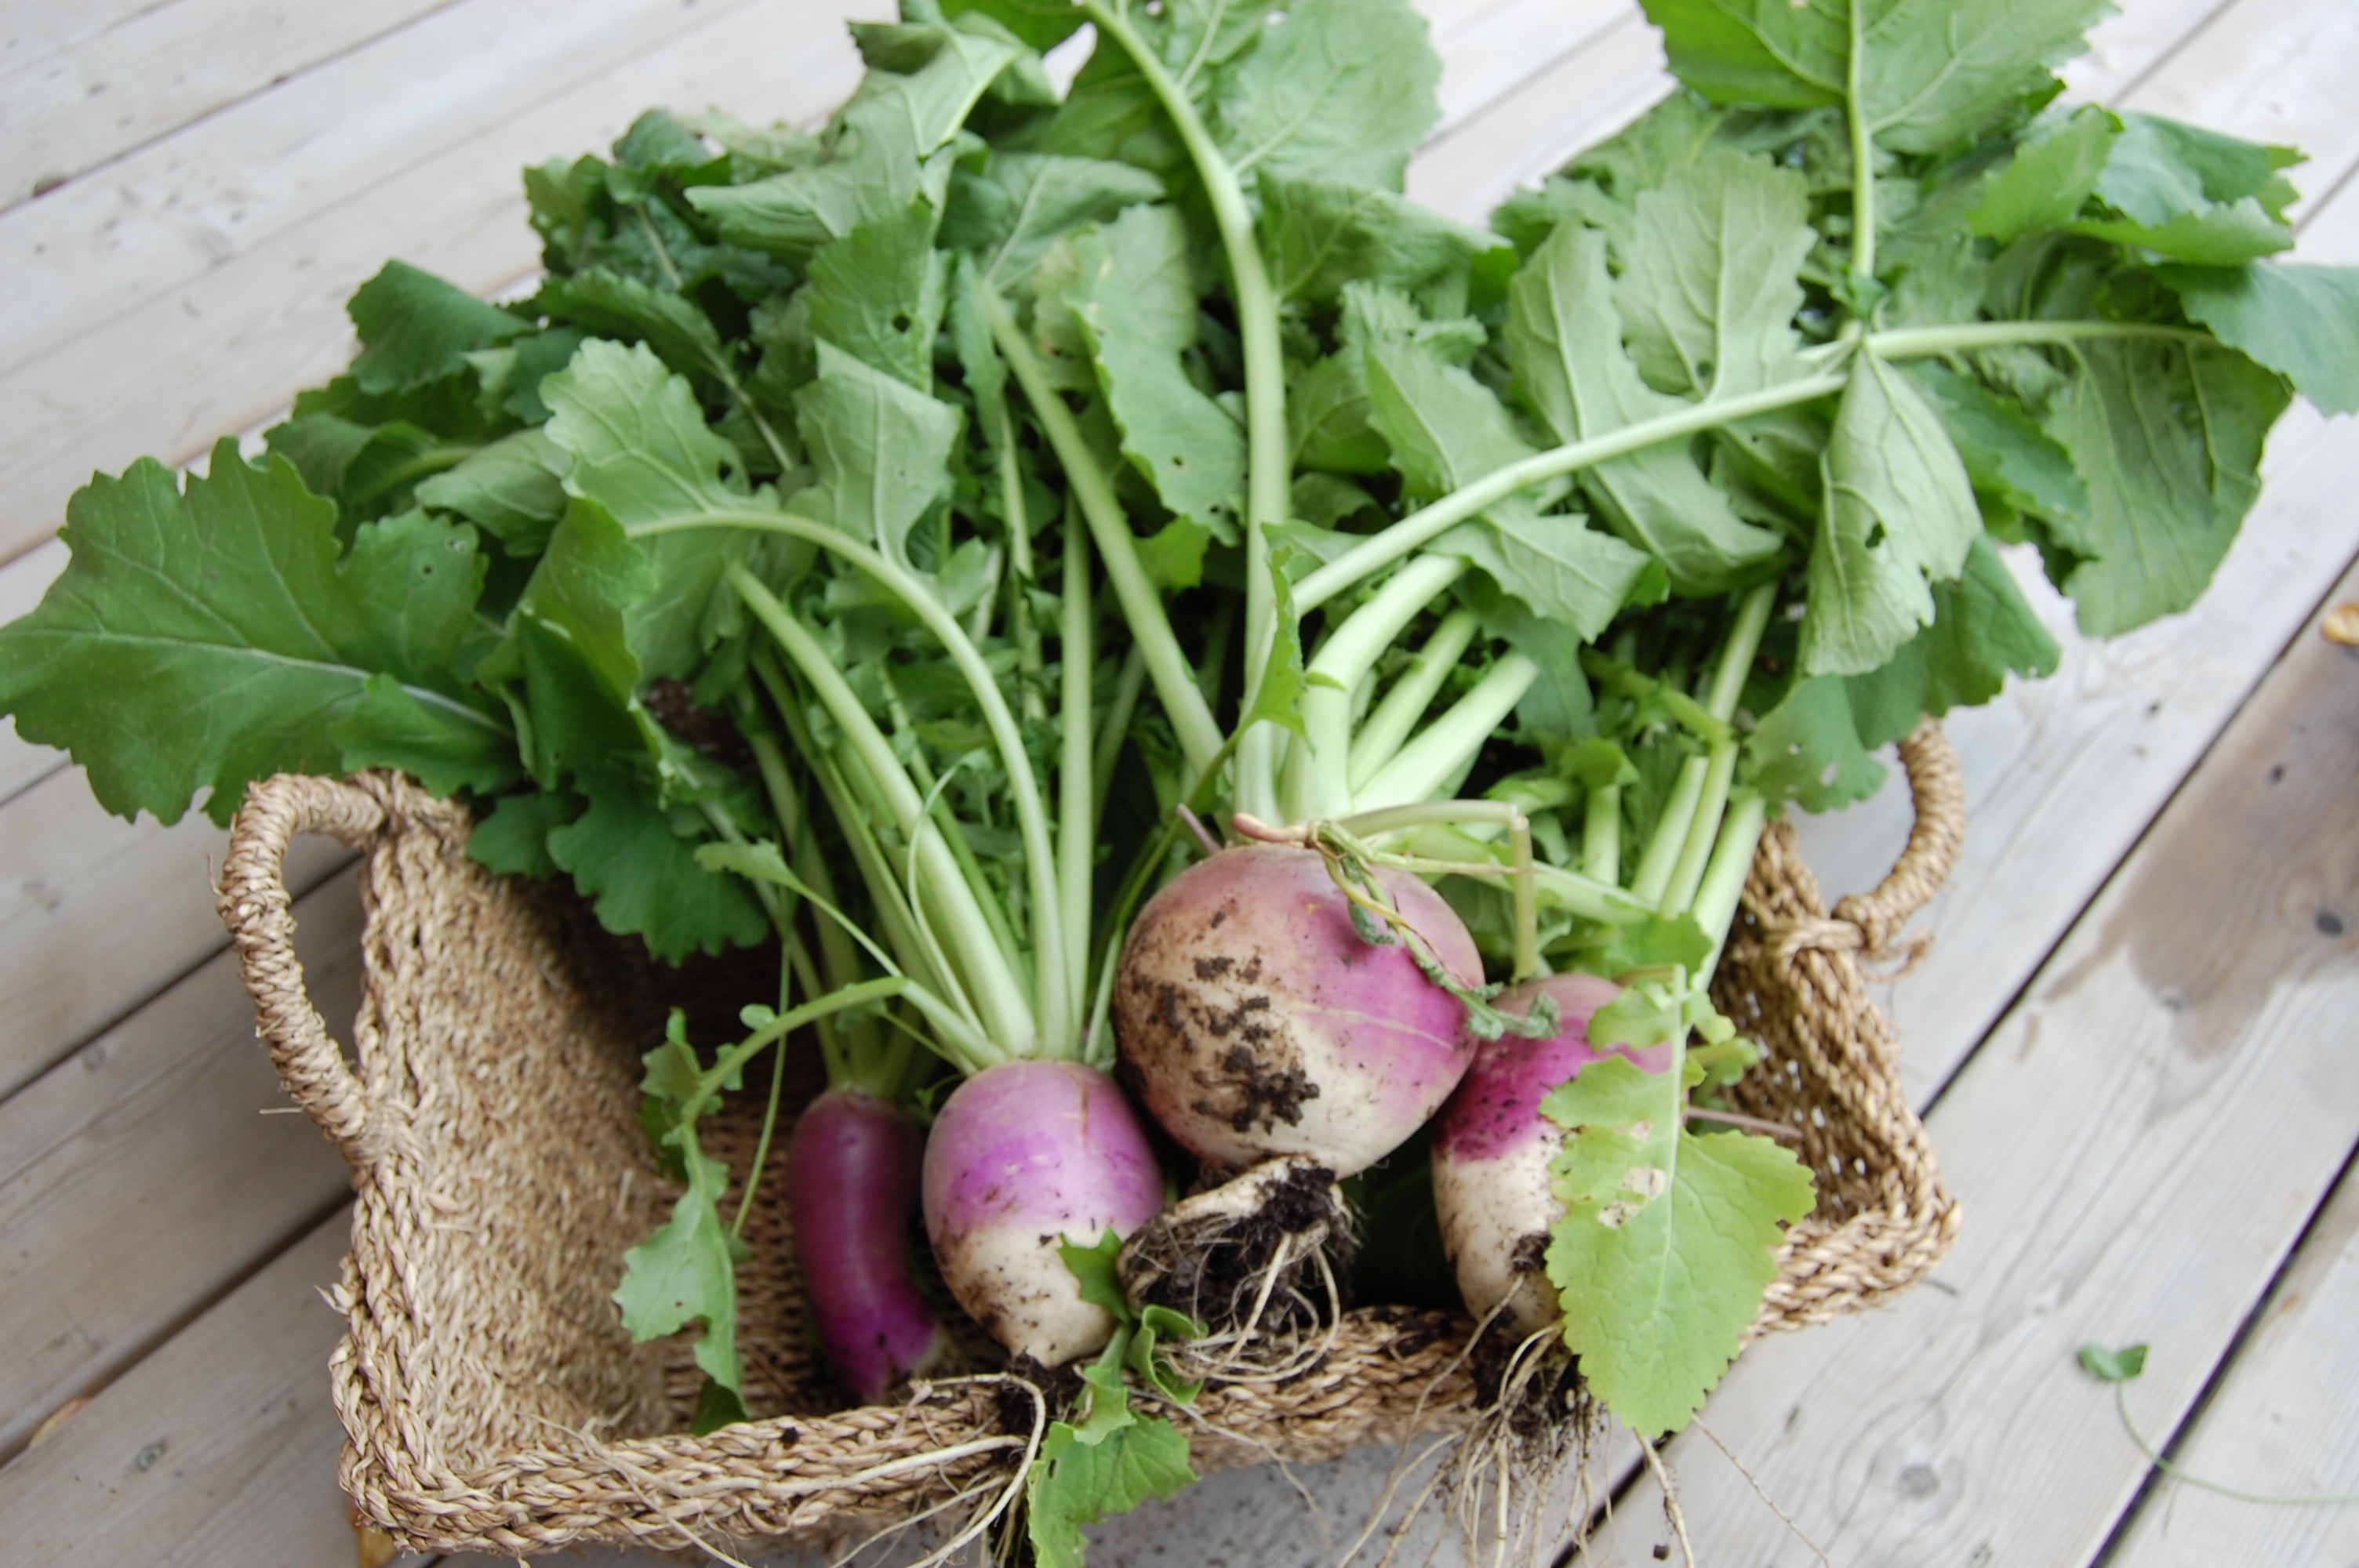 fresh turnips